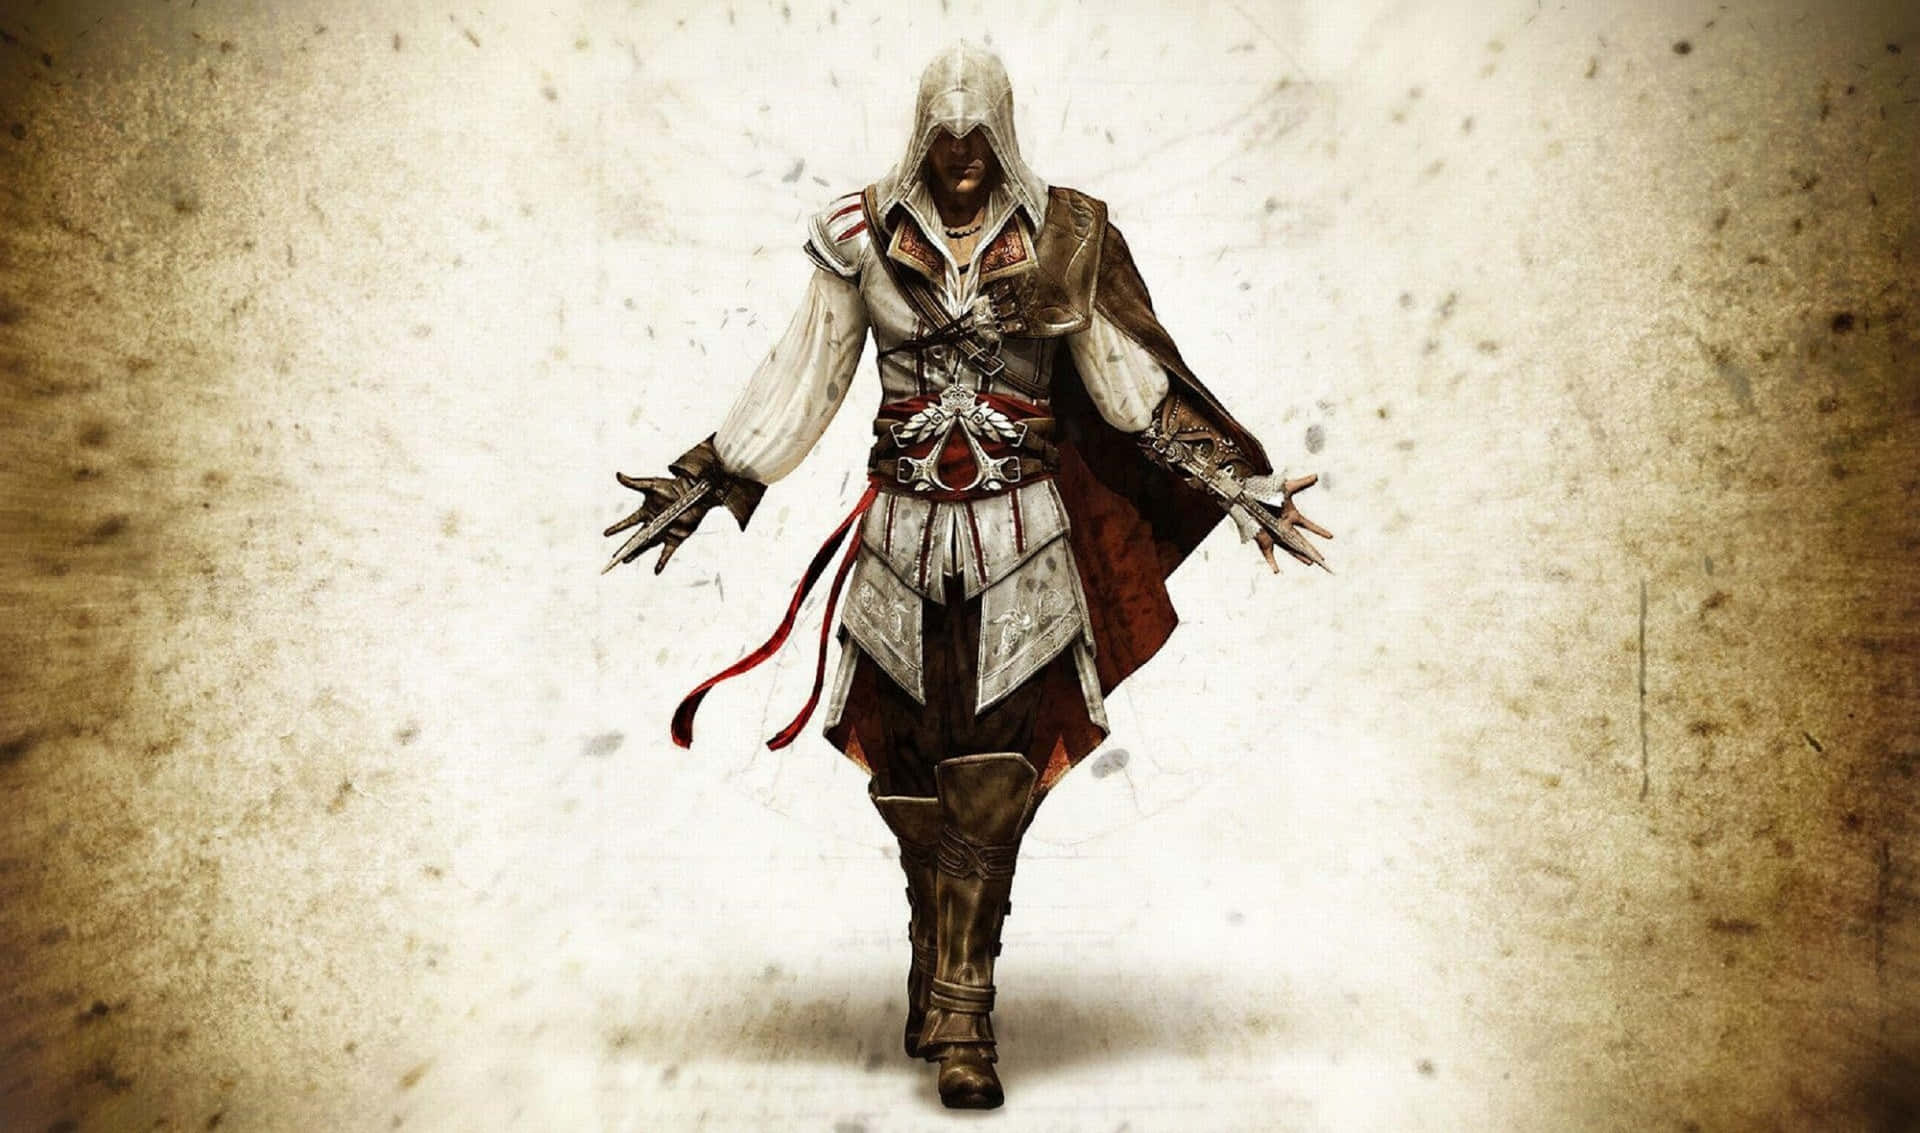 2440x1440fundo De Tela Do Ezio Auditore Do Assassin's Creed Odyssey.